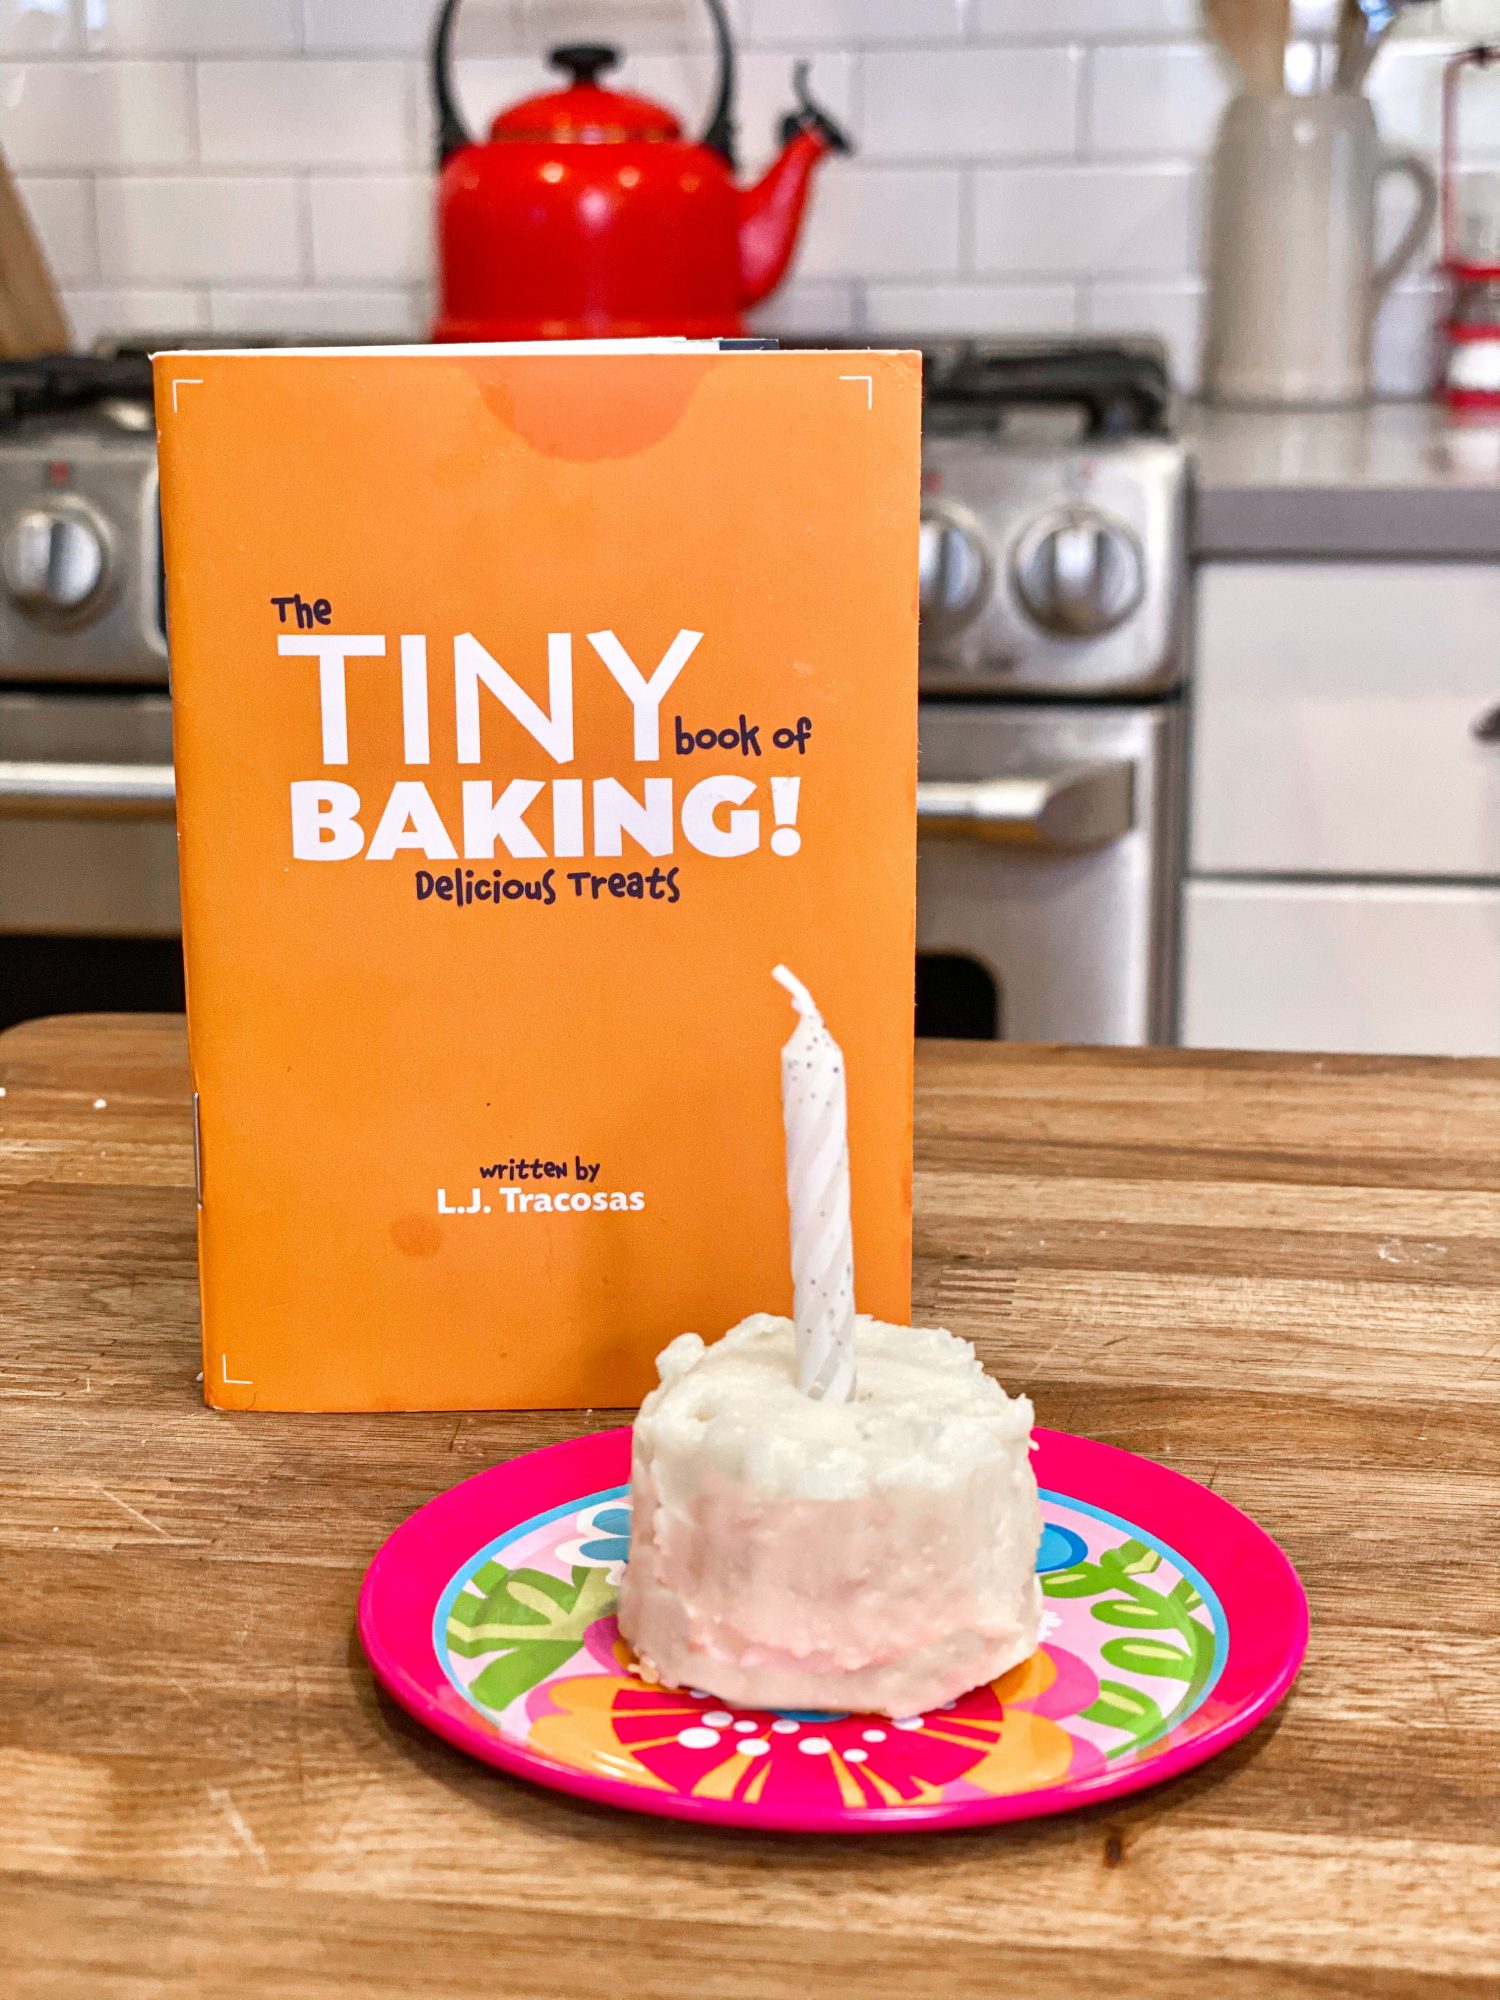 Tiny Baking